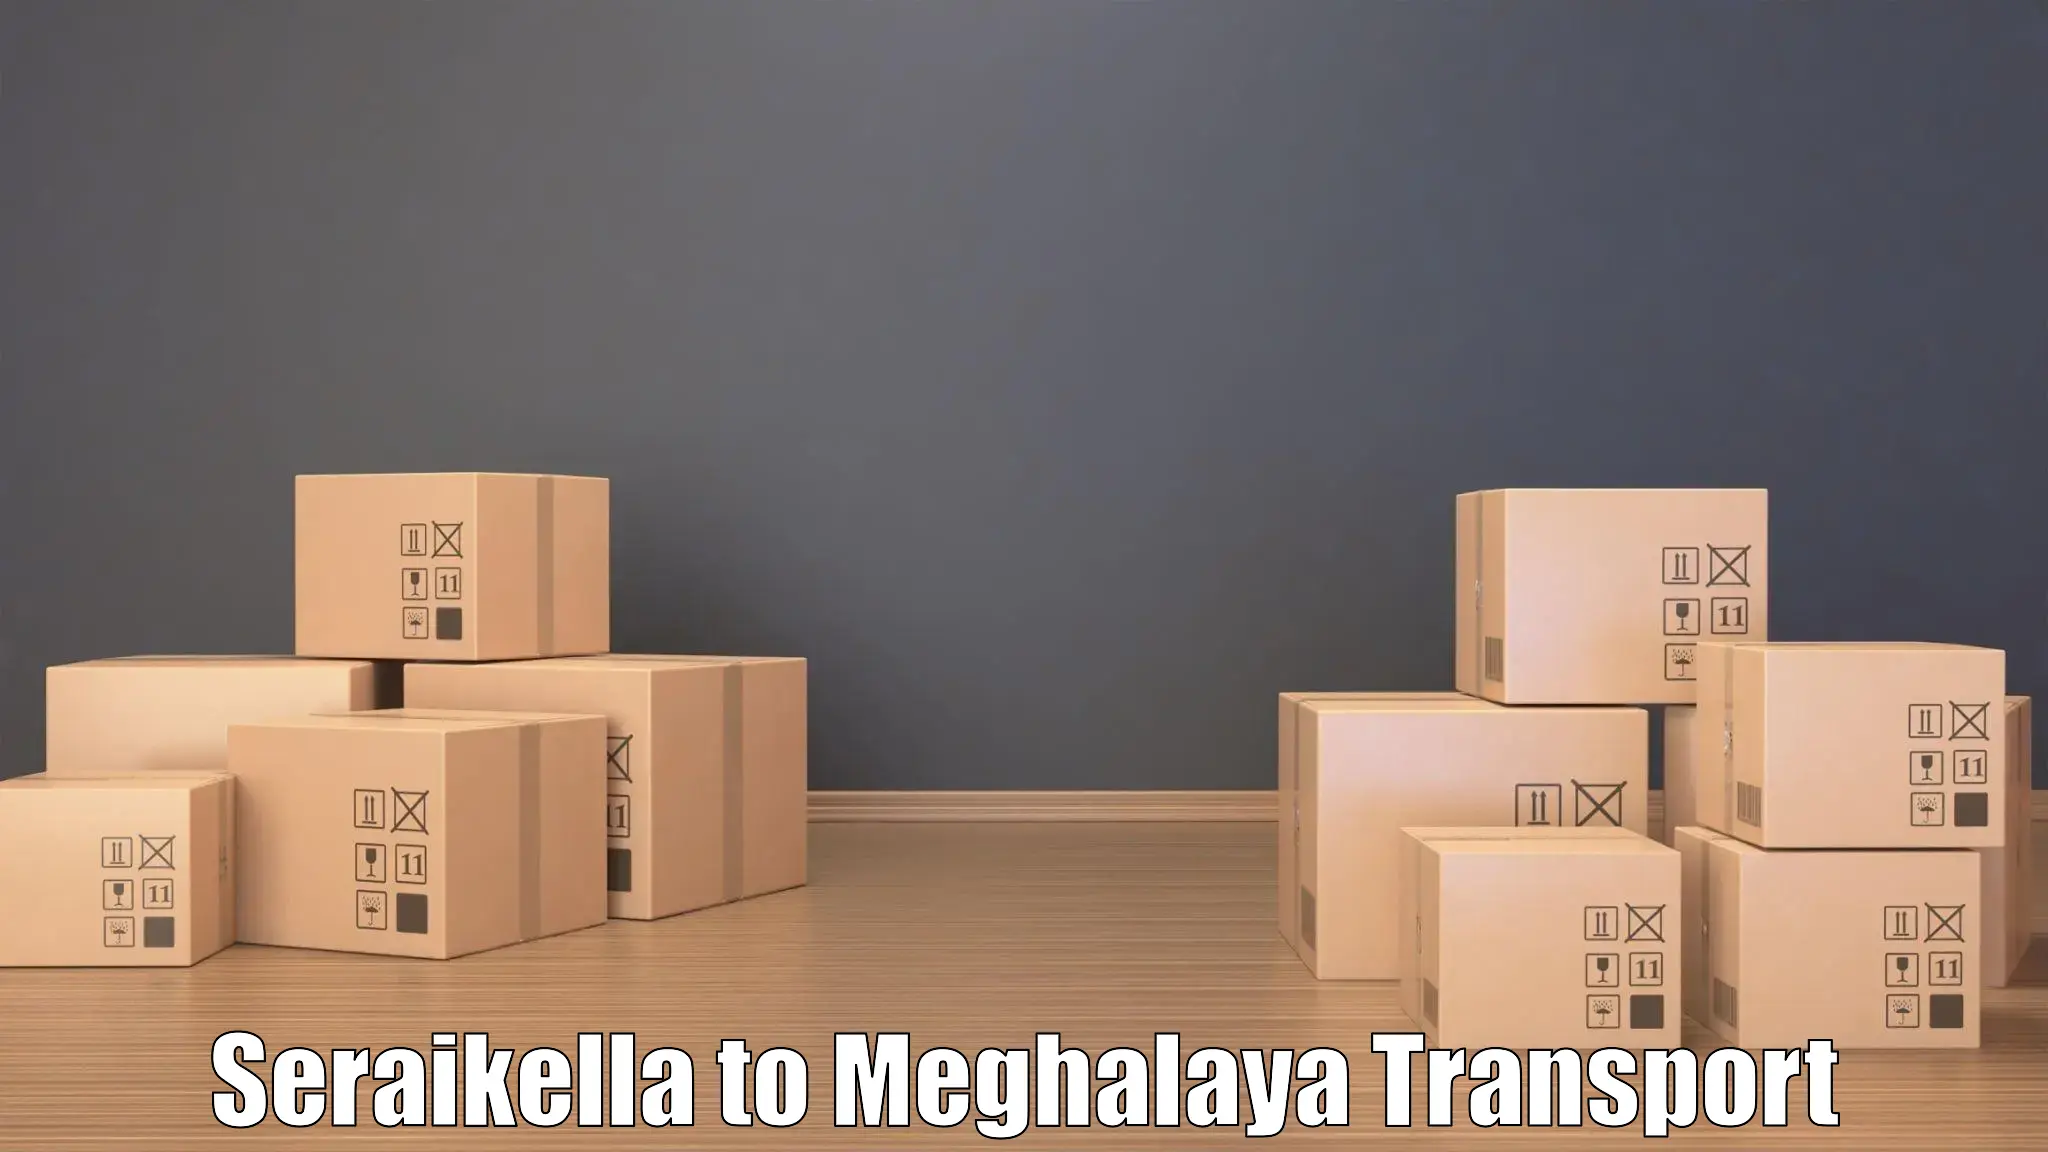 Interstate goods transport Seraikella to Meghalaya